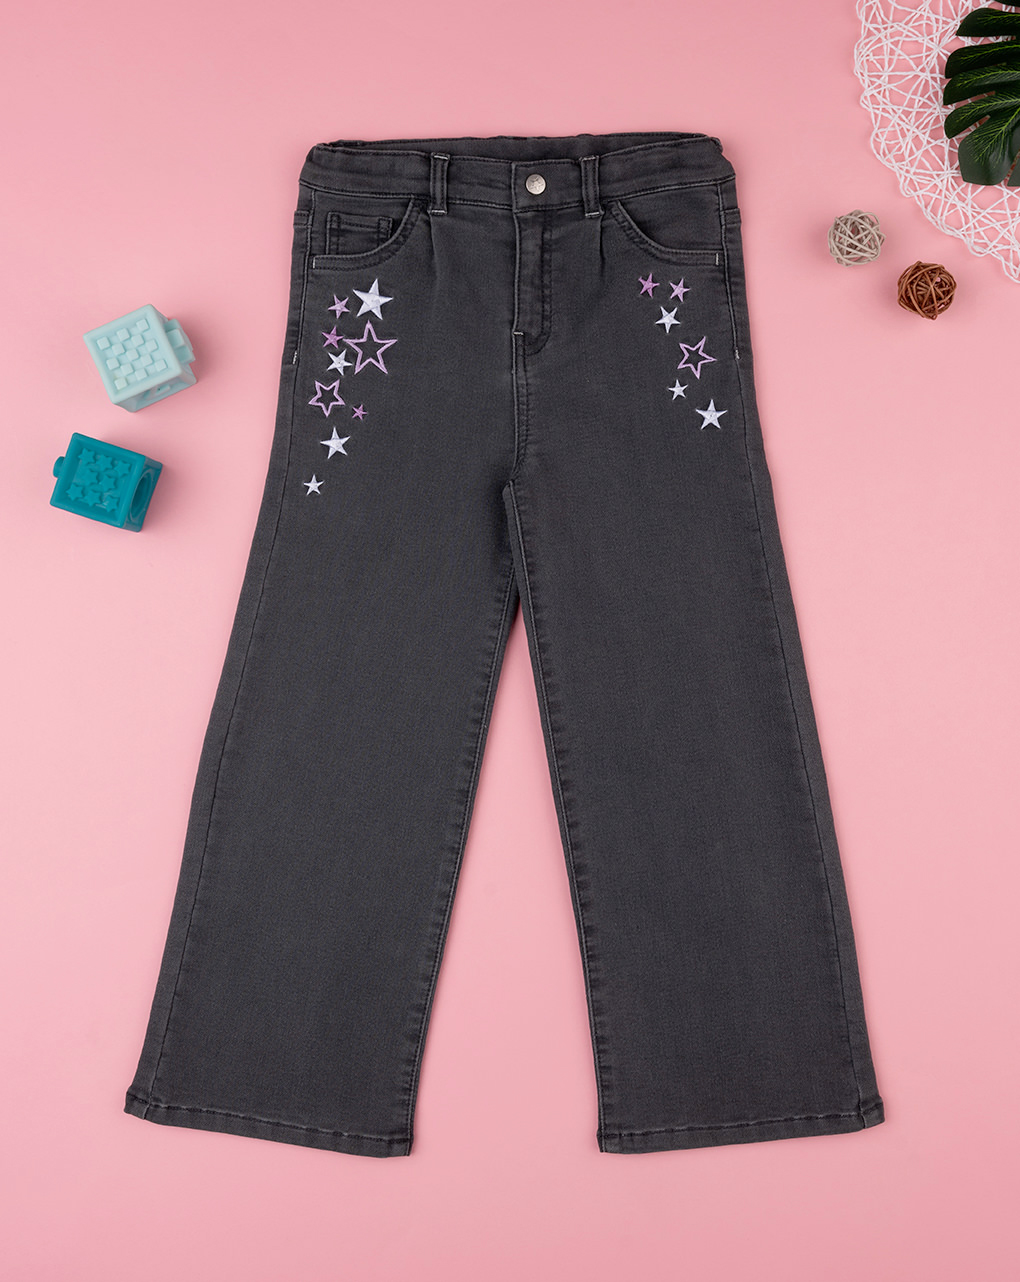 παιδικό τζιν παντελόνι μαύρο flare με αστεράκια για κορίτσι